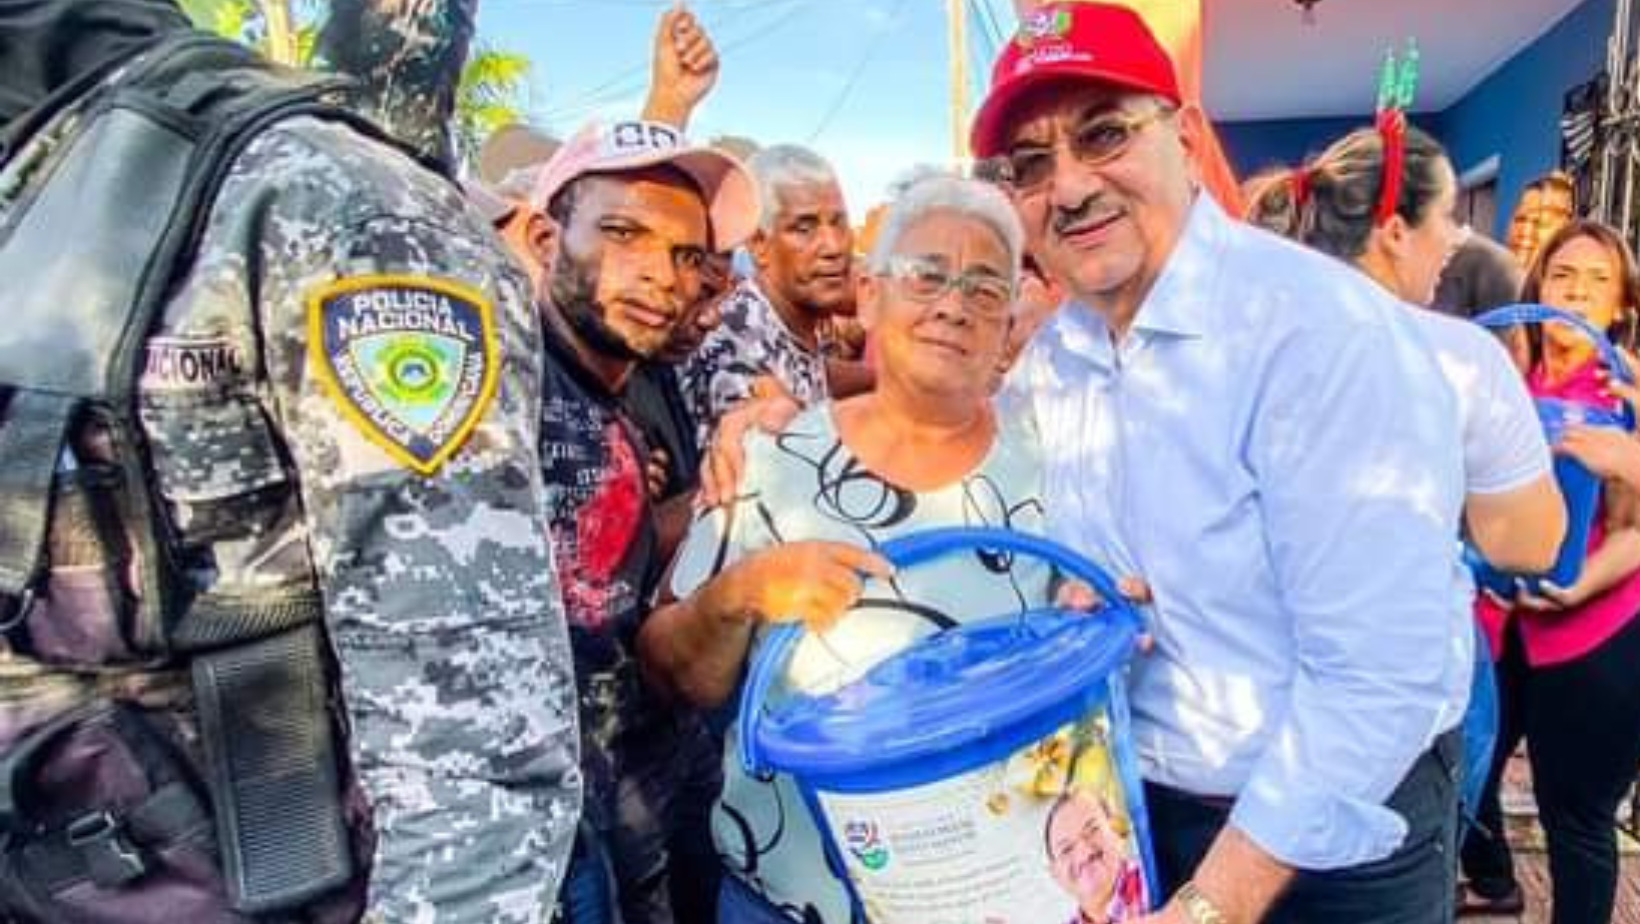 El senador por la provincia Hato Mayor, Dr. Cristóbal Castillo, entregando kits alimenticios en compañía de agentes policiales. FOTO: Fuente externa